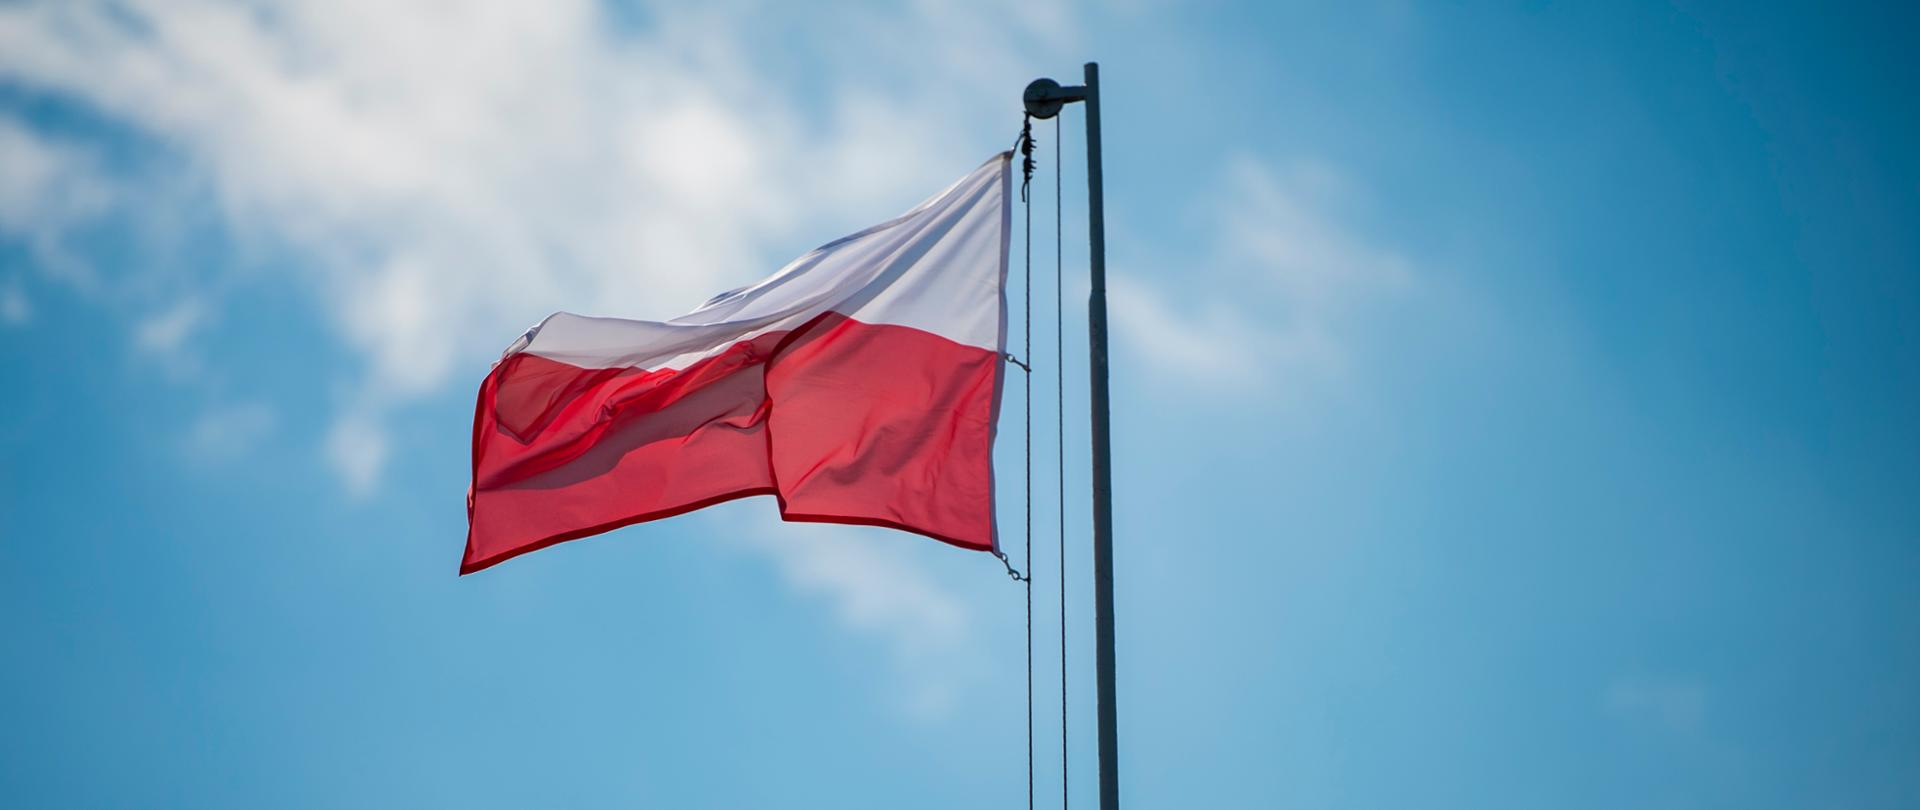 Flaga Polski biało-czerwona